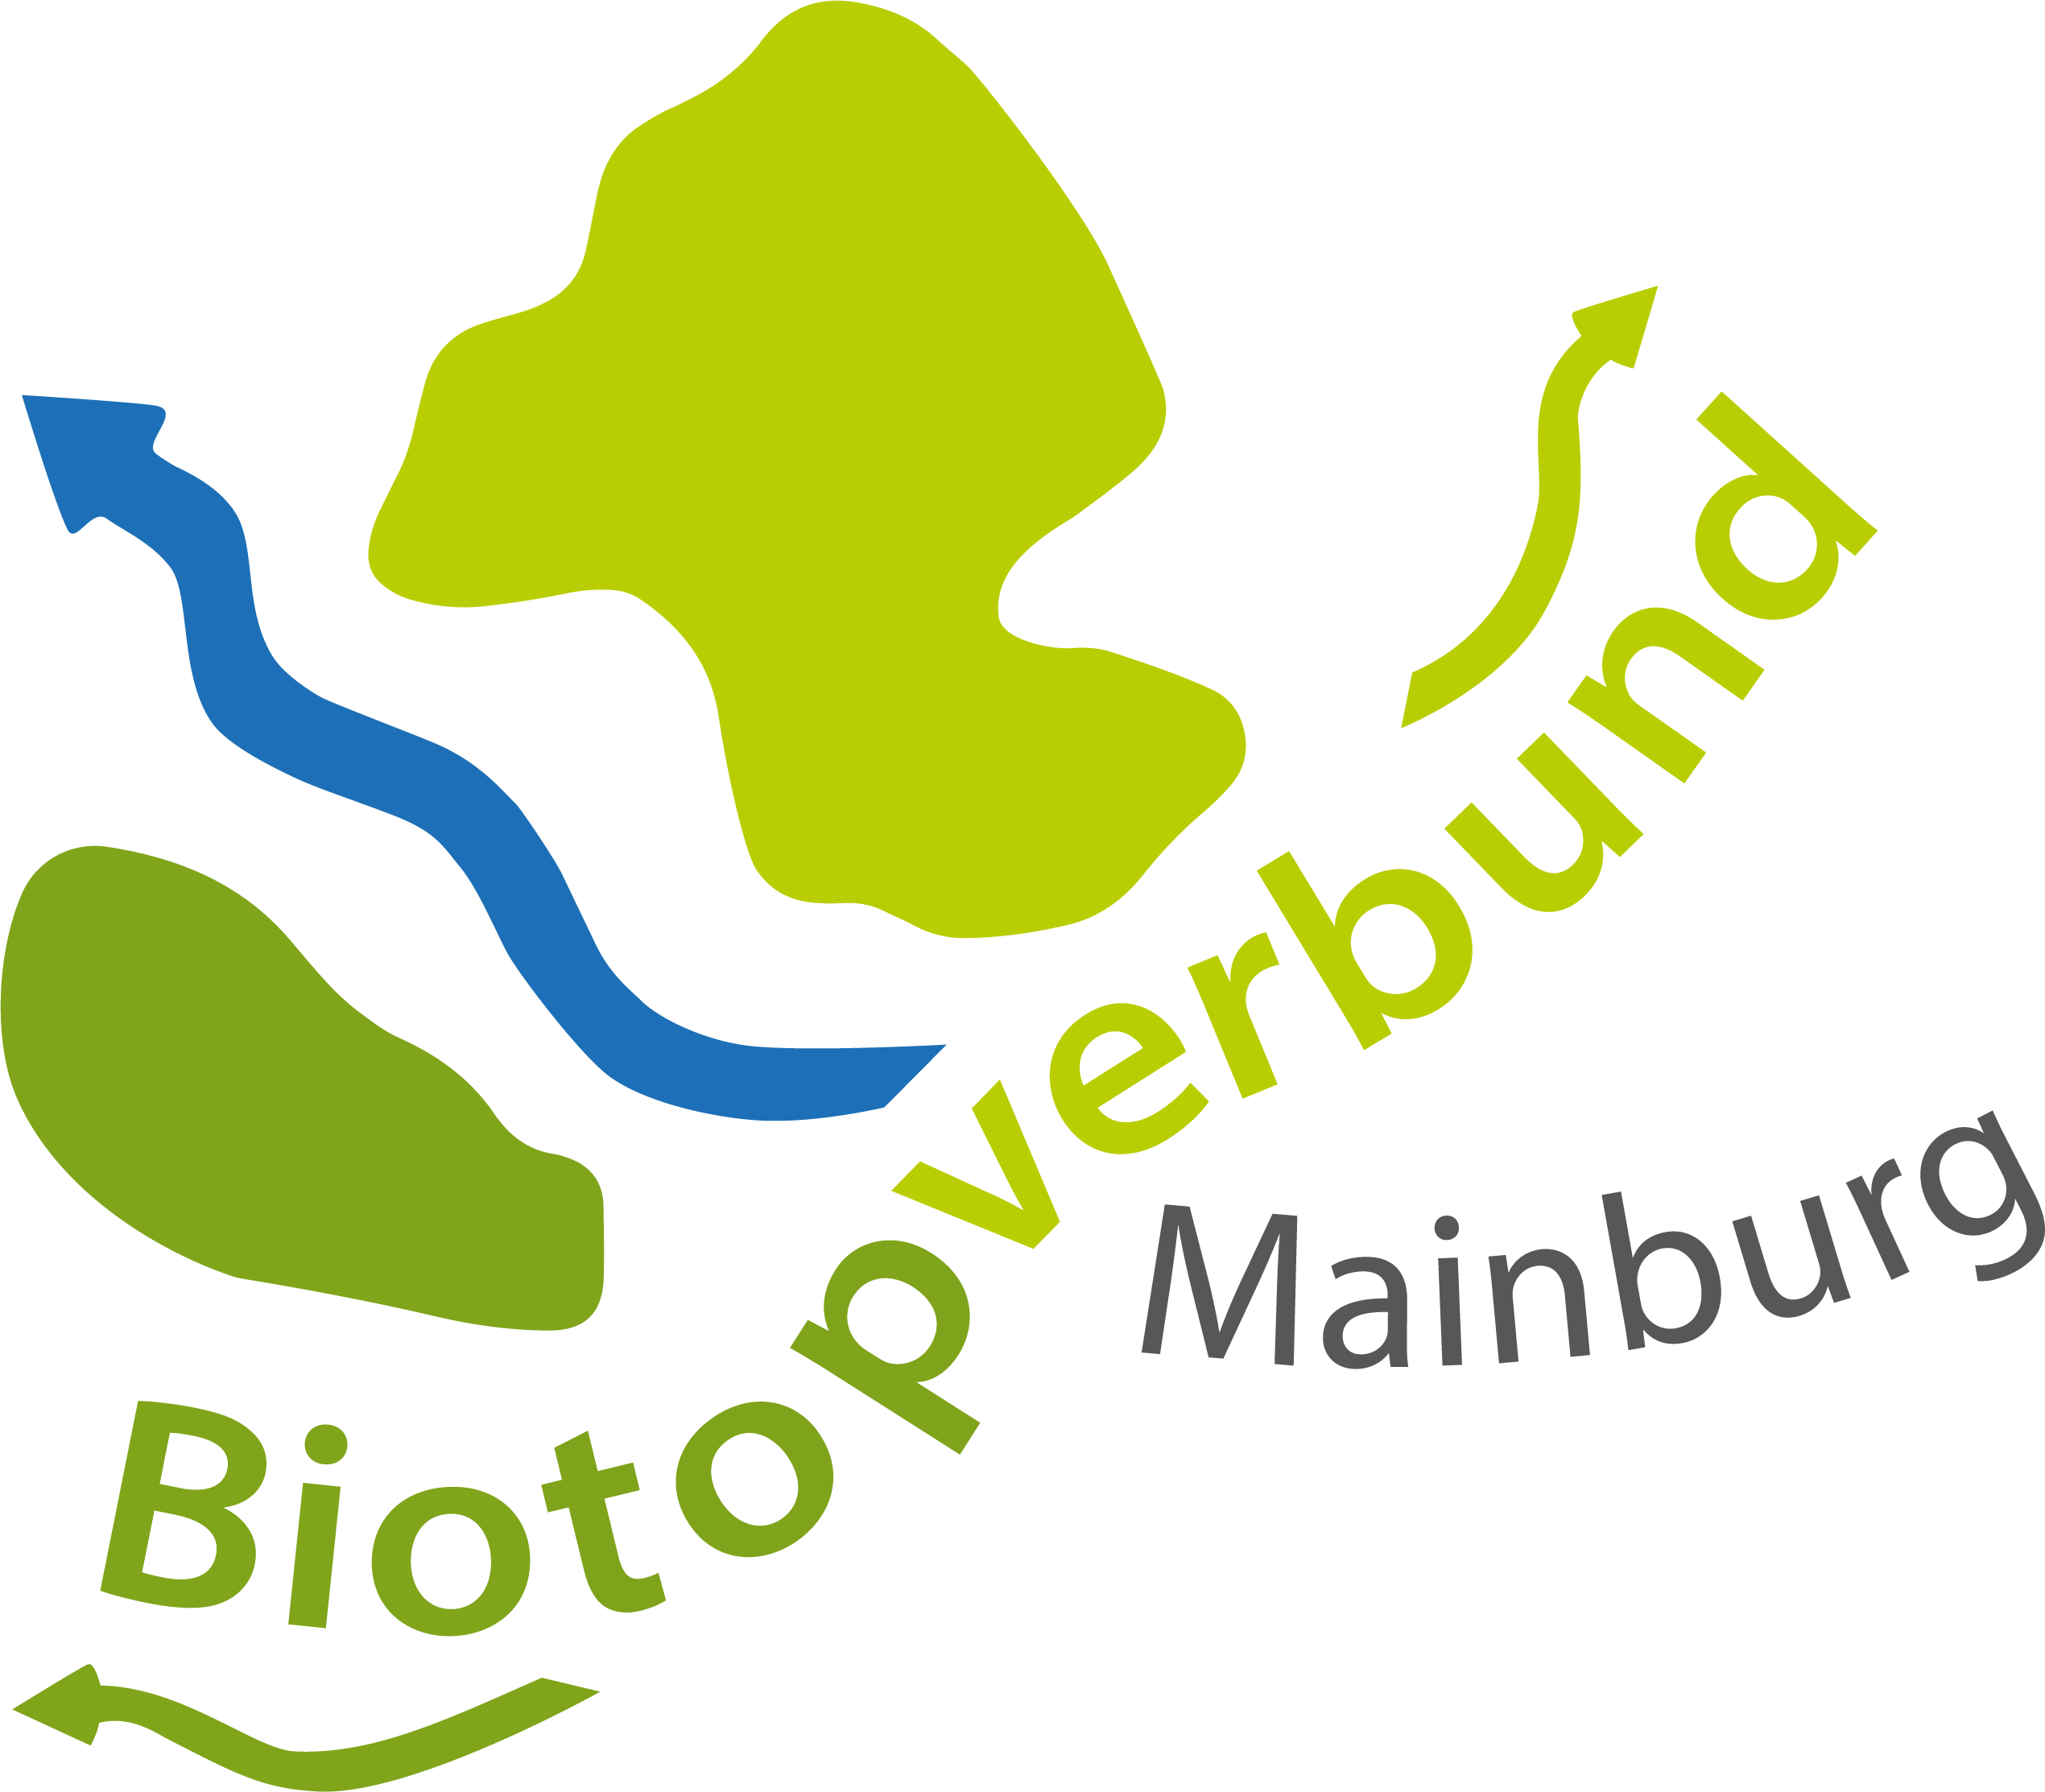 Biotopverbund Mainburg auf instagram